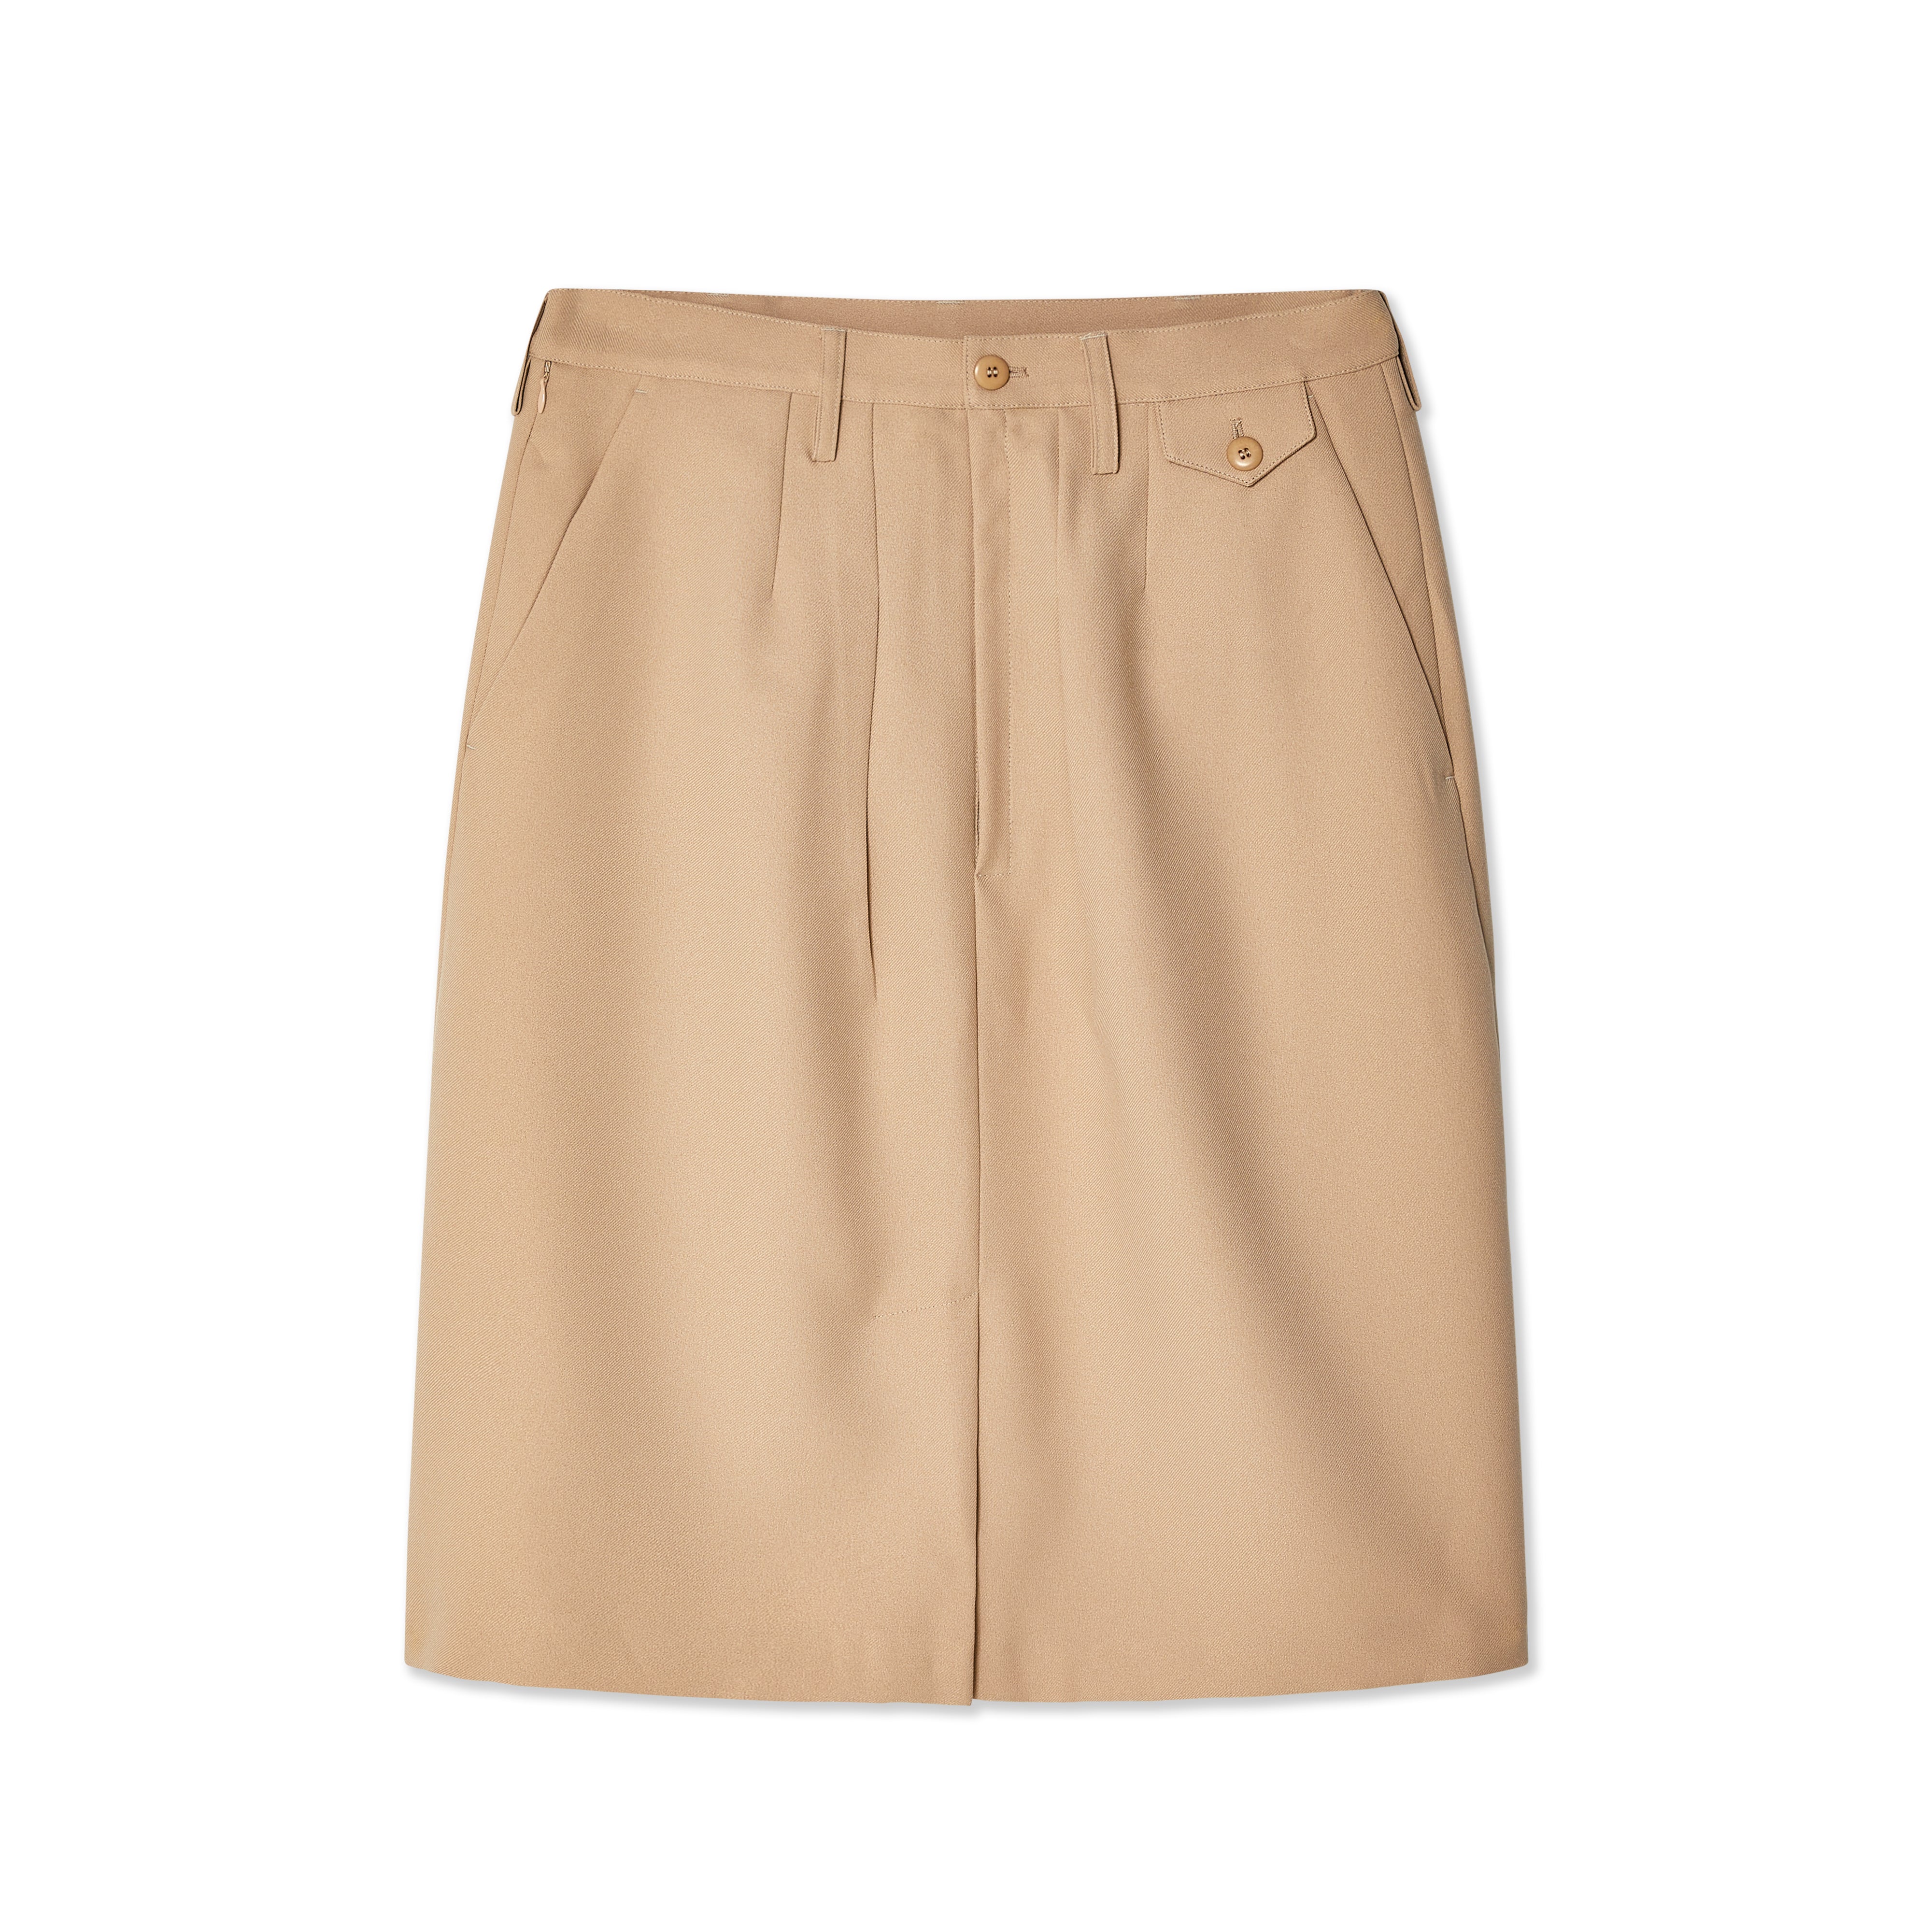 Random Identities - Men's Chino Skirt - (Beige) – DSMNY E-SHOP